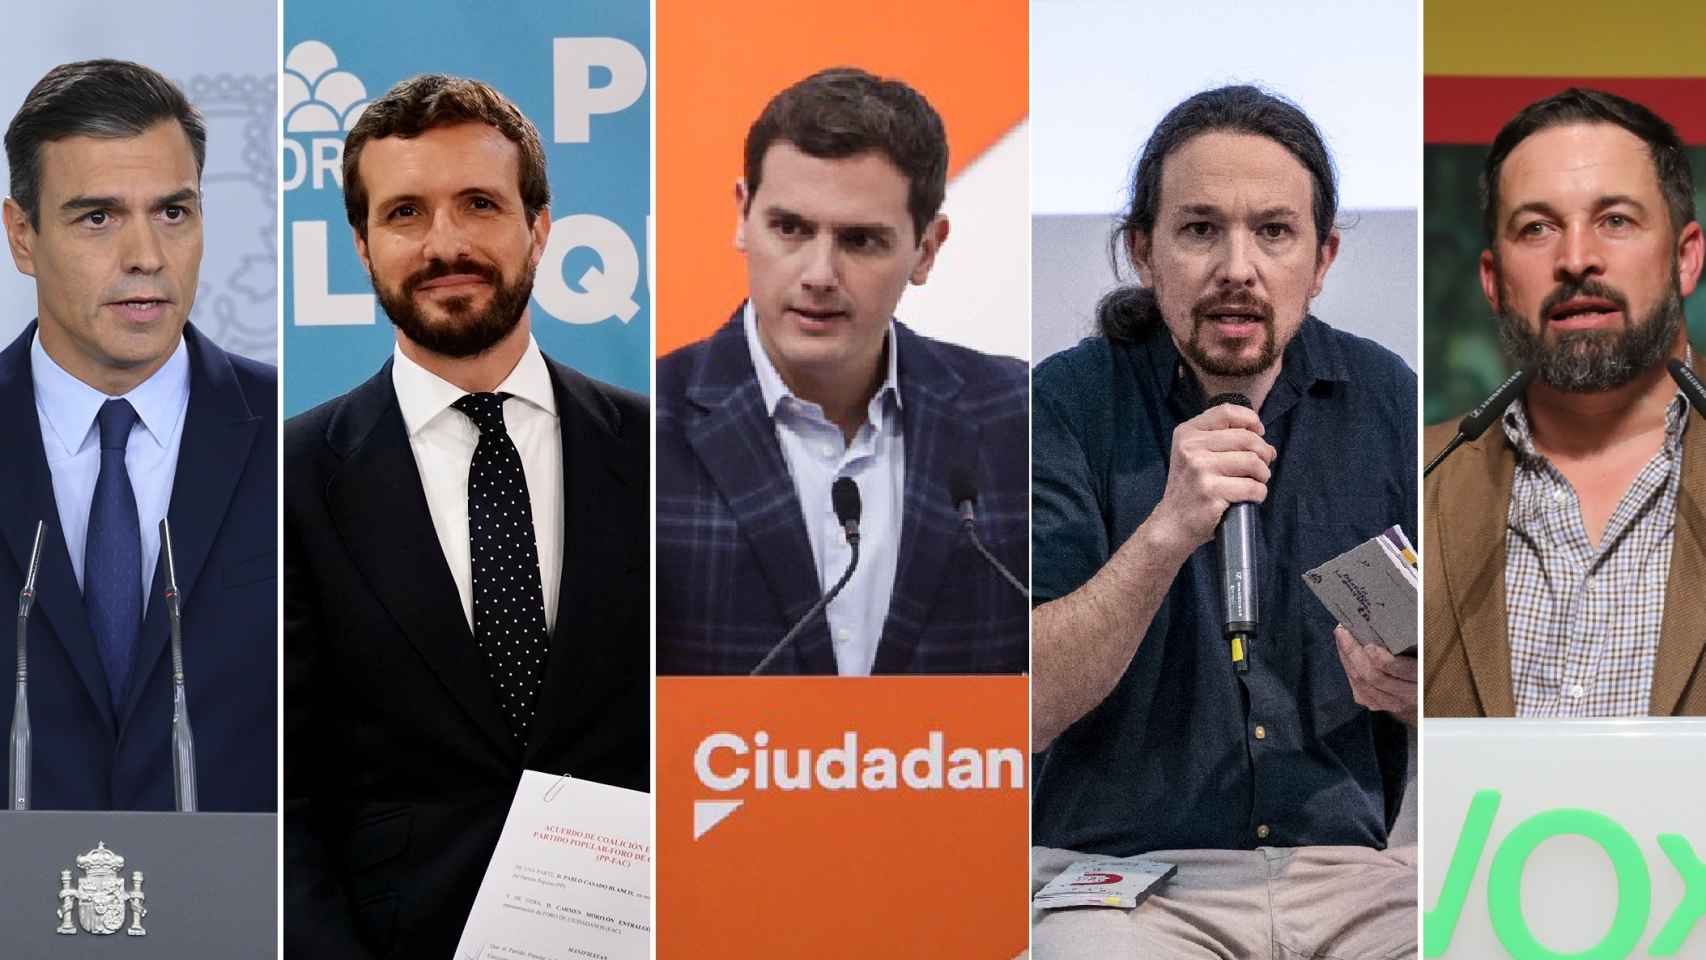 Pedro Sánchez (PSOE), Pablo Casado (PP), Albert Rivera (Cs), Pablo Iglesias (Podemos) y Santiago Abascal (Vox).